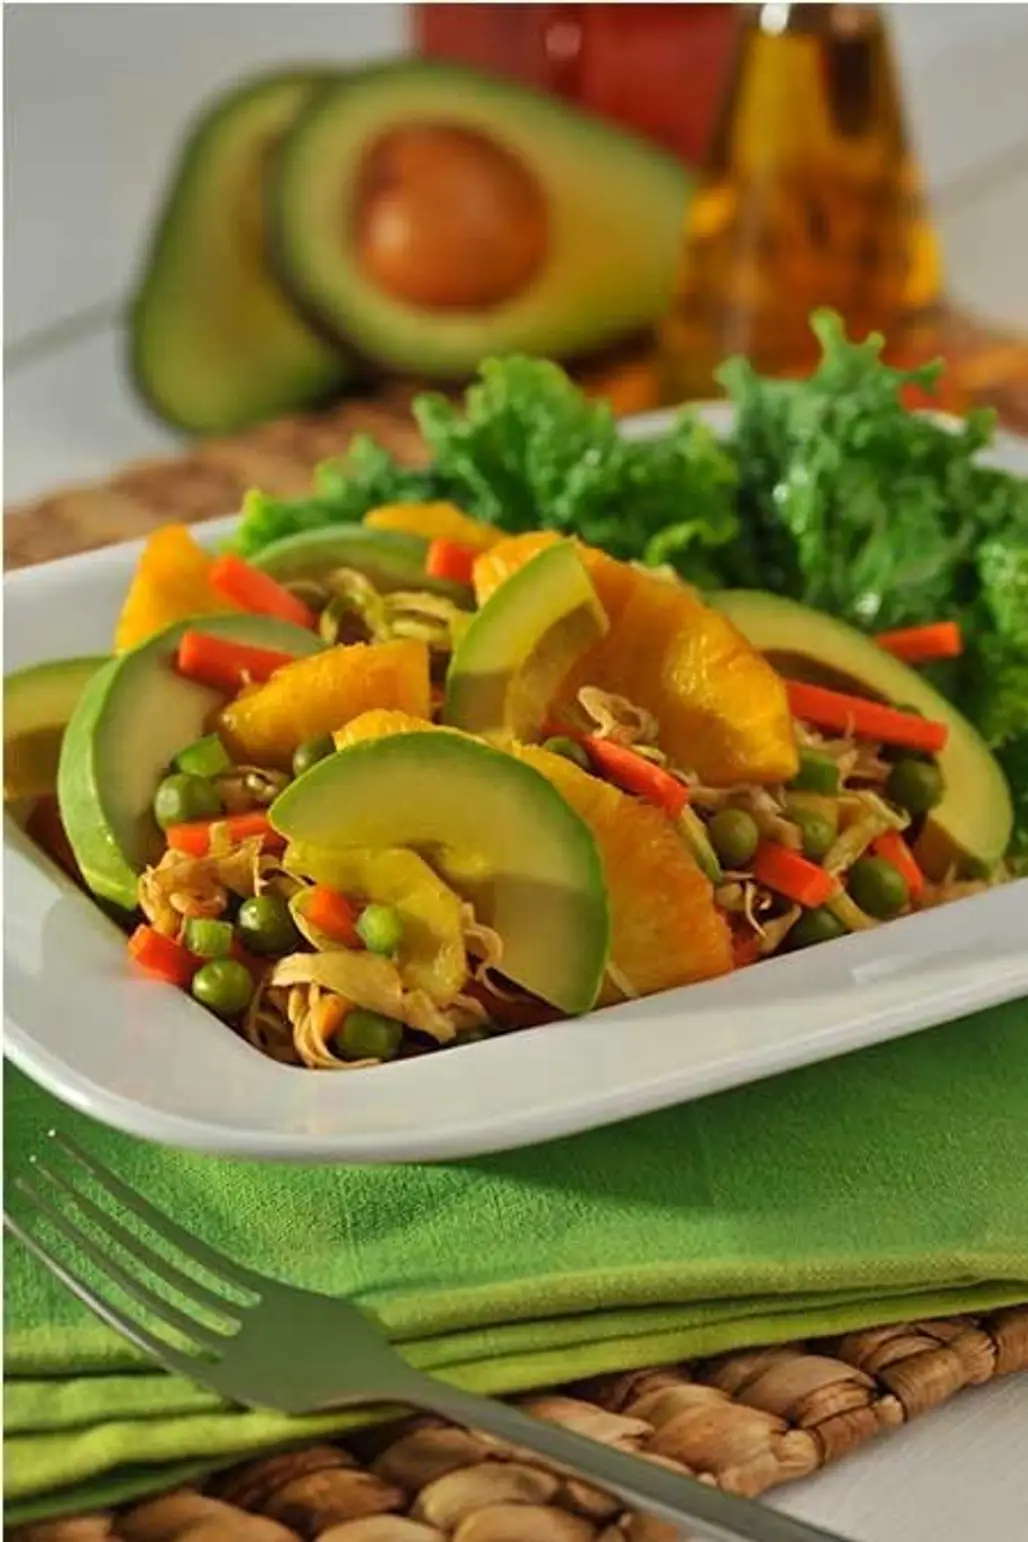 Tropical Avocado Salad